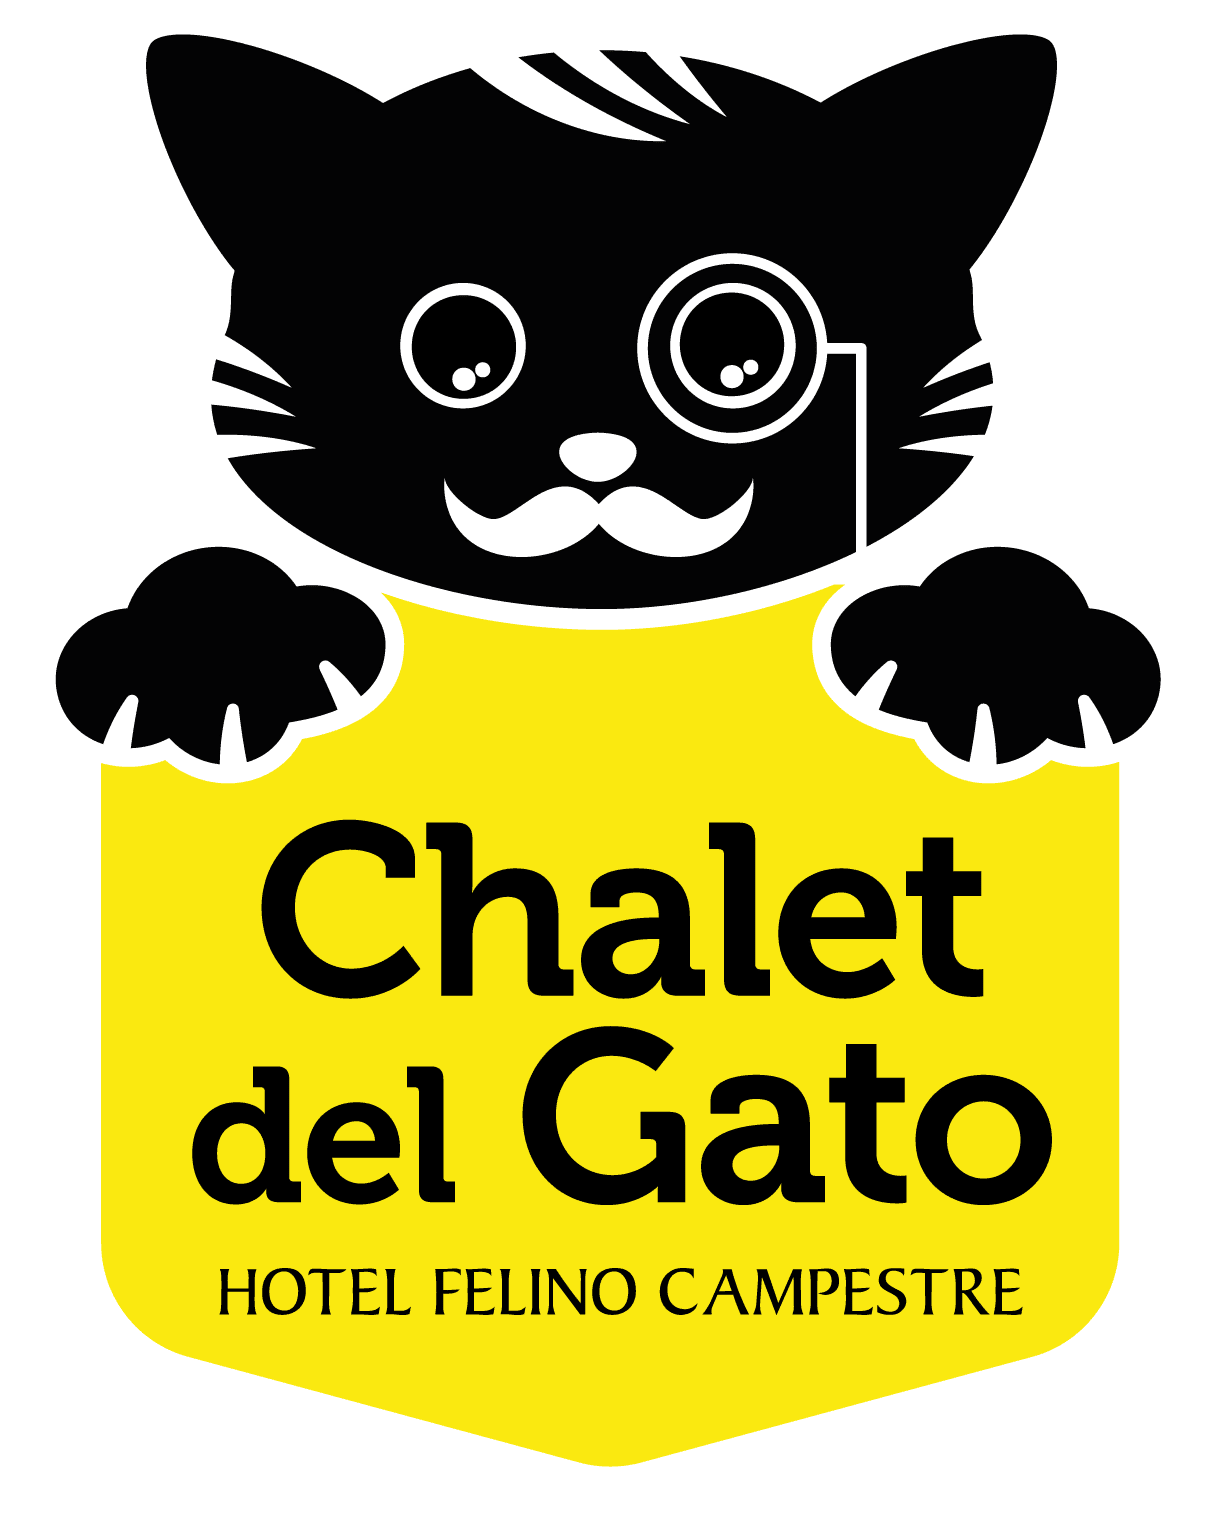 Chalet del Gato